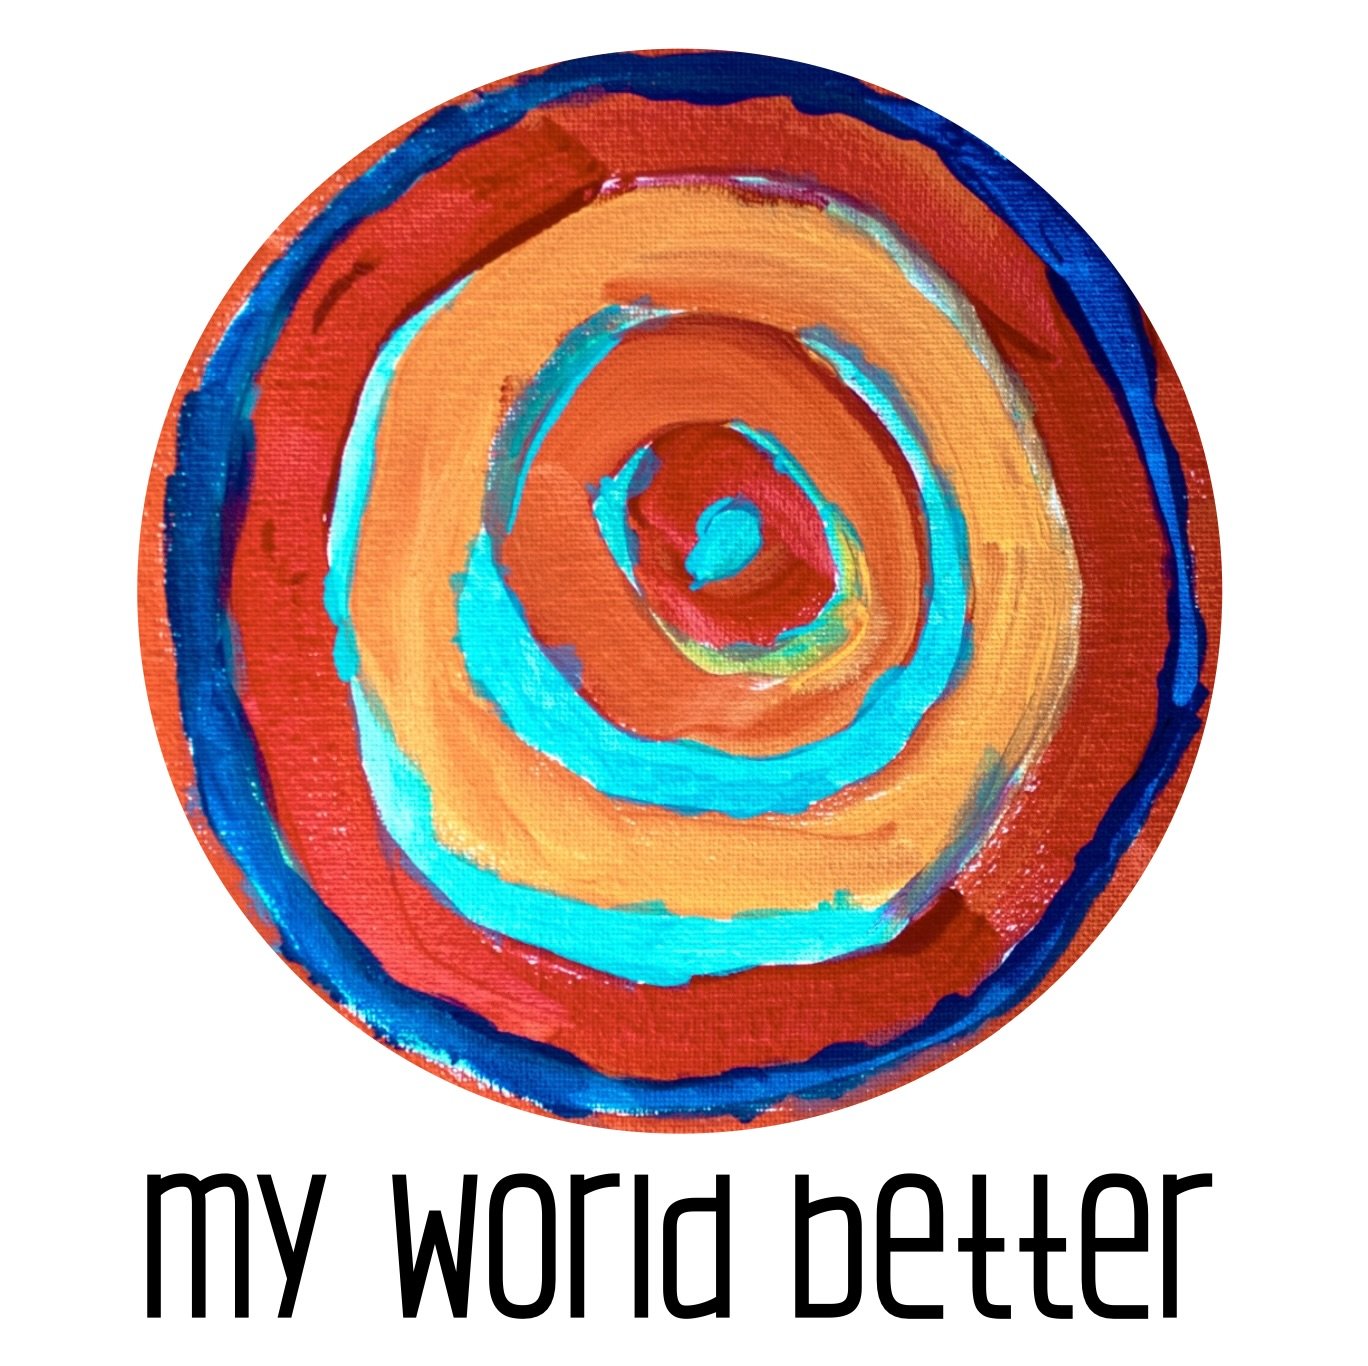 My World Better 